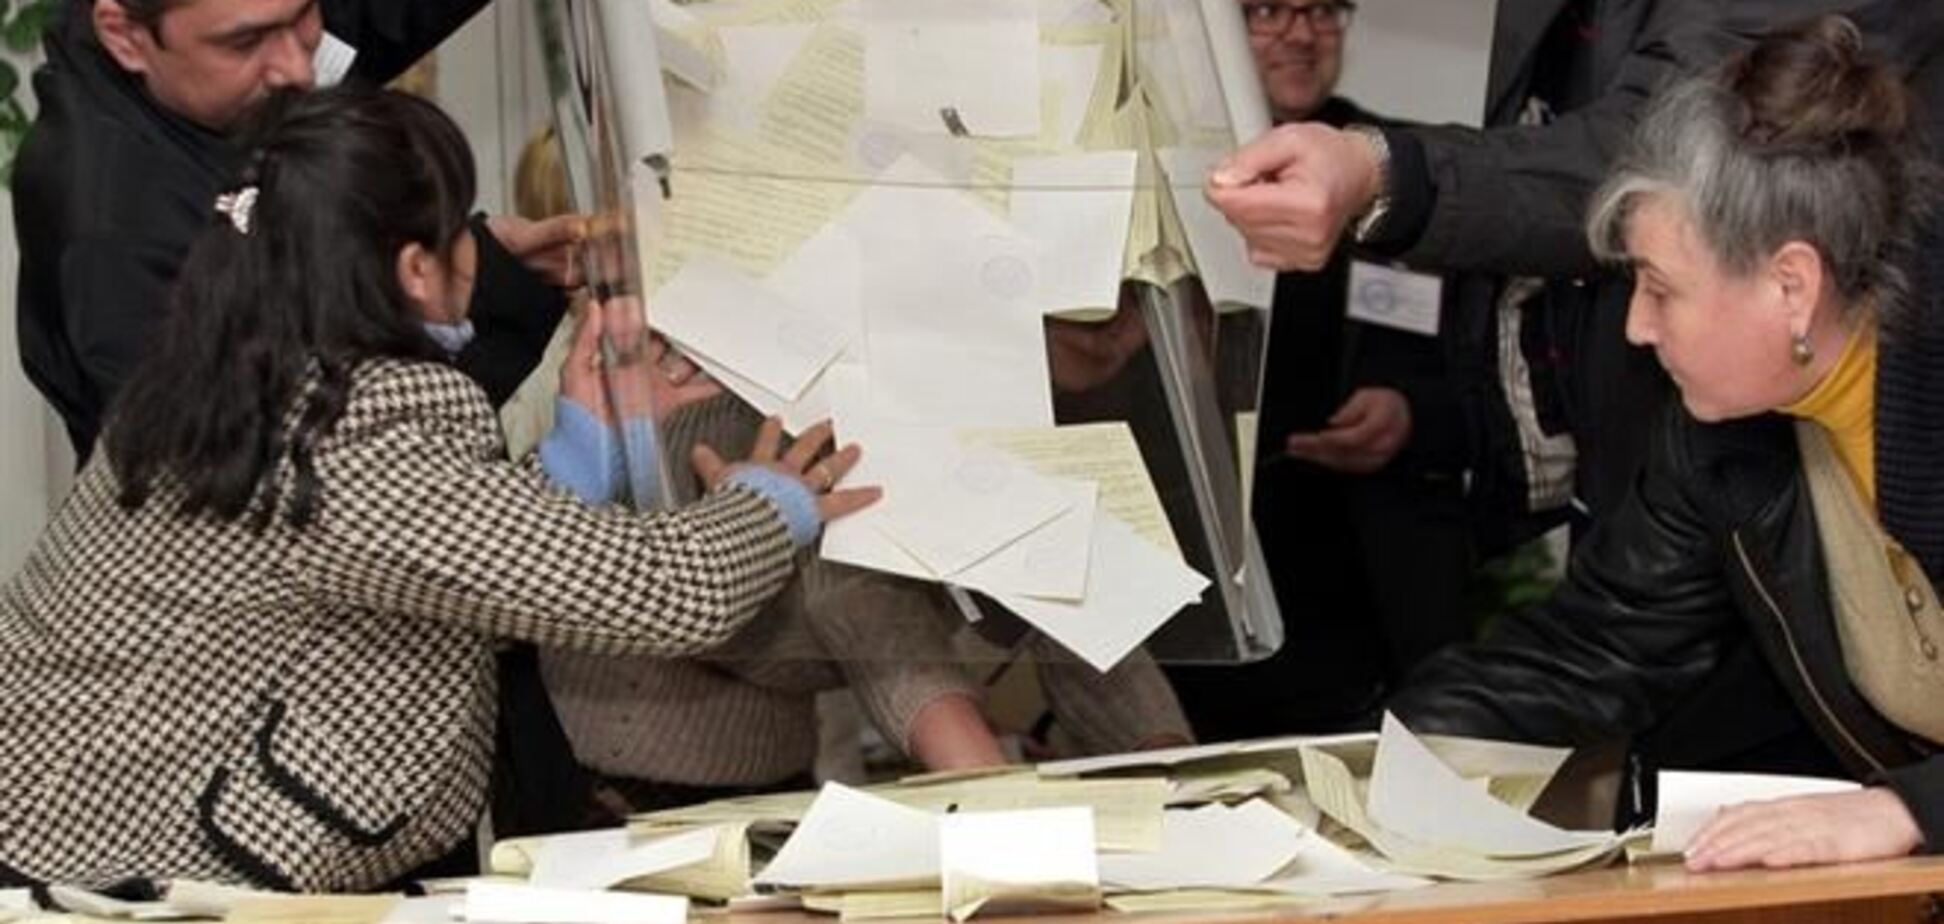 Комітет виборців України повідомляє про масові фальсифікації під час псевдореферендума в Криму